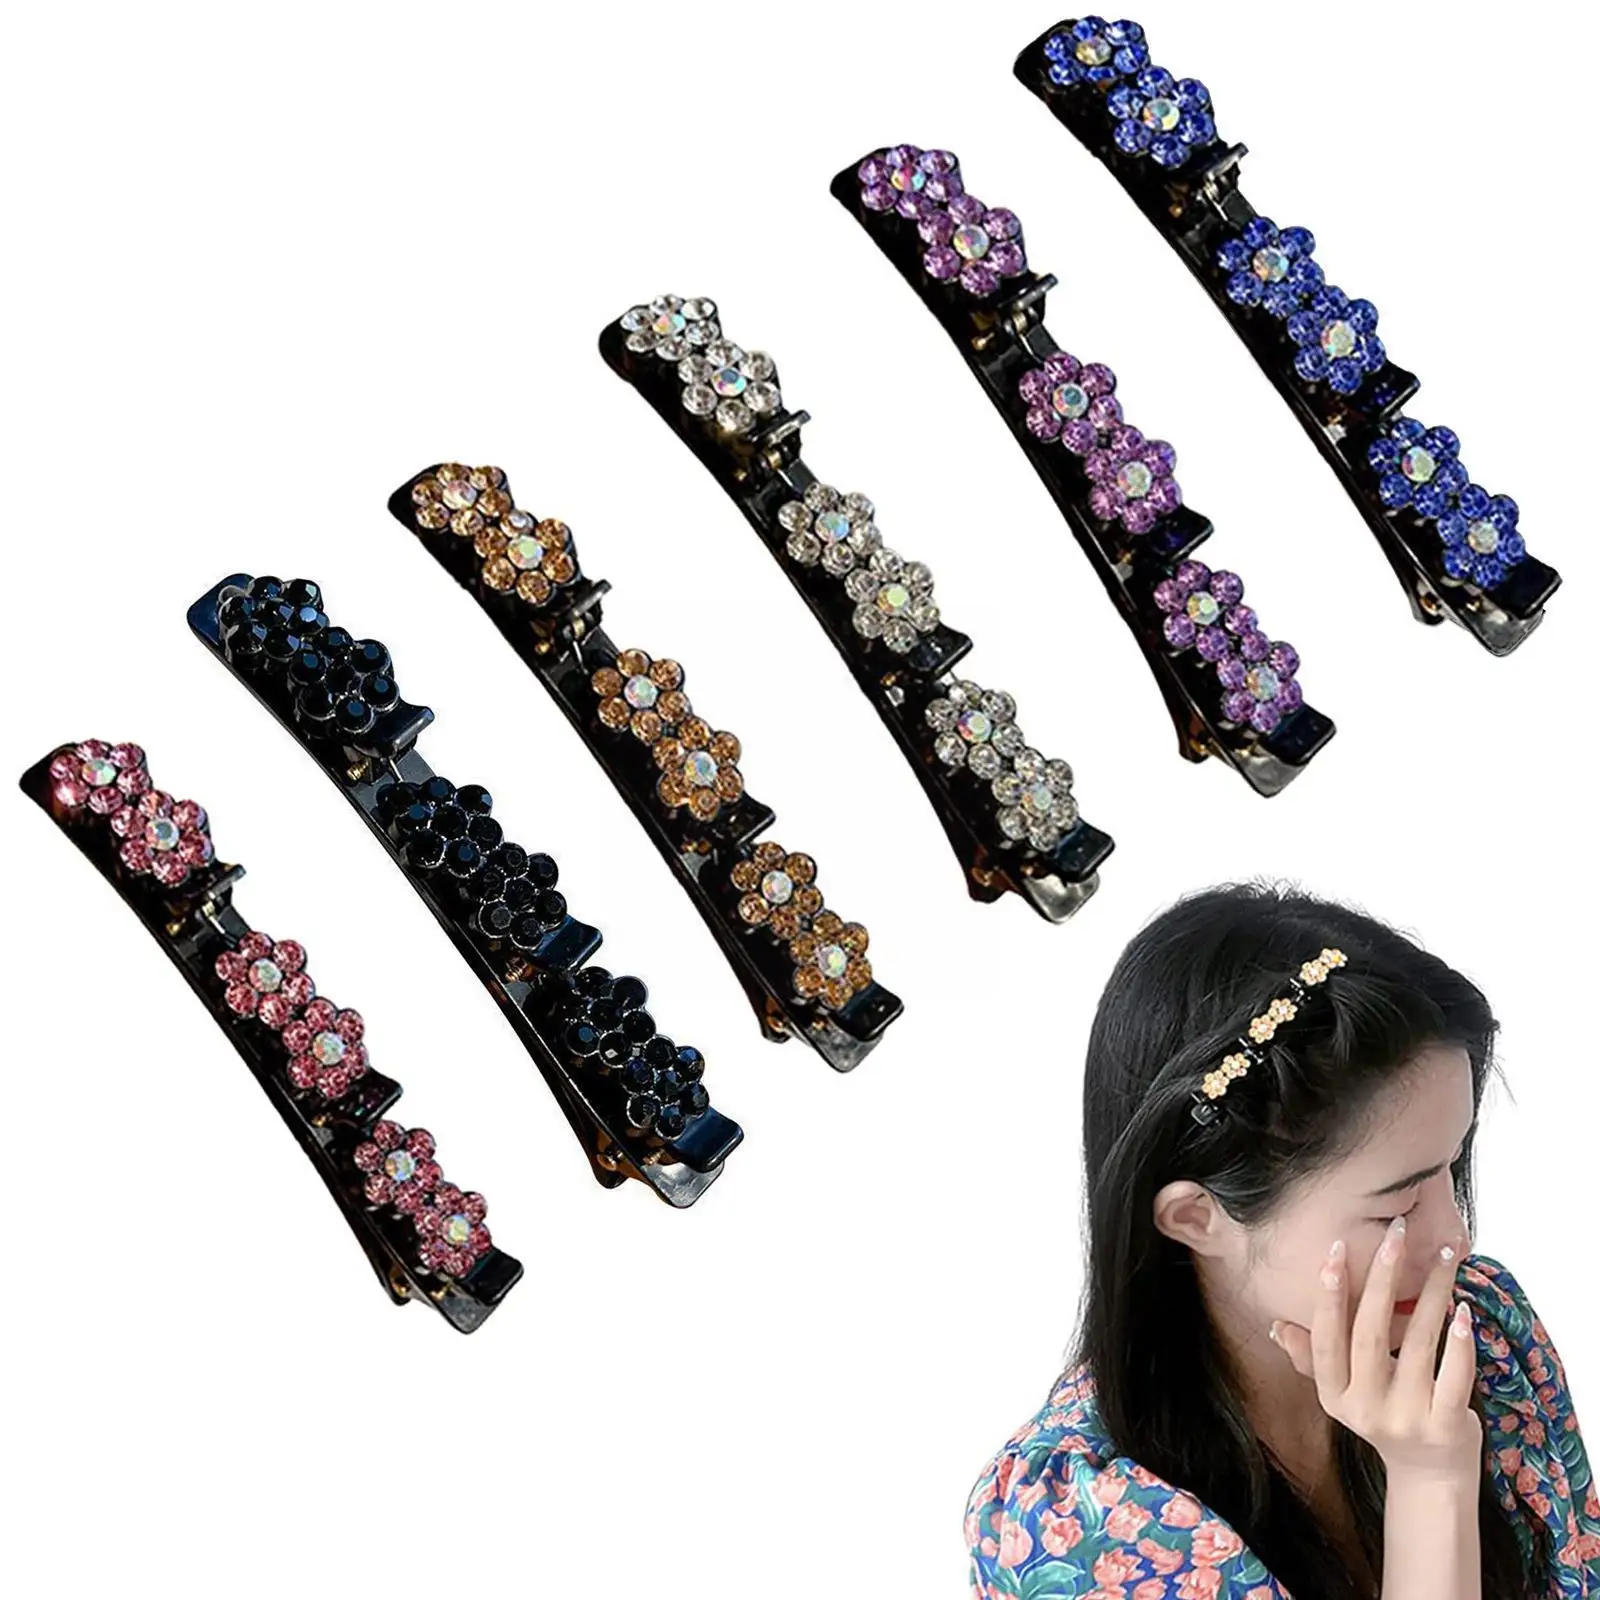 

Hair Decorate Clips Bangs Hold Barrettes Women Elegant Sweet Fashion Pearls Headband Hair Accessories Flower Hairpins Braid J1q2